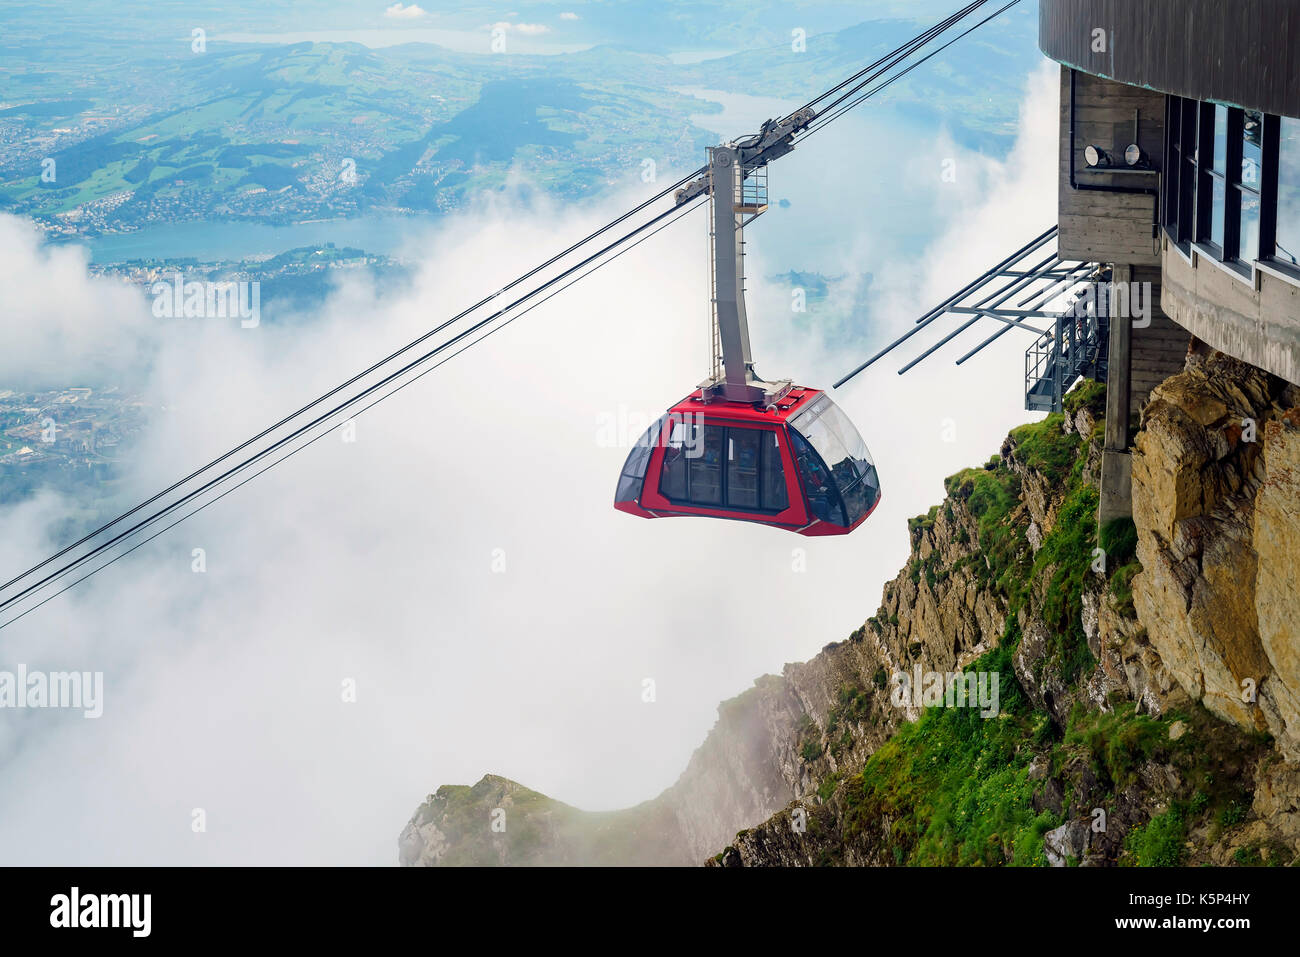 La nouvelle et belle téléphérique - dragon ride au mont Pilatus, Lucerne, Suisse Banque D'Images